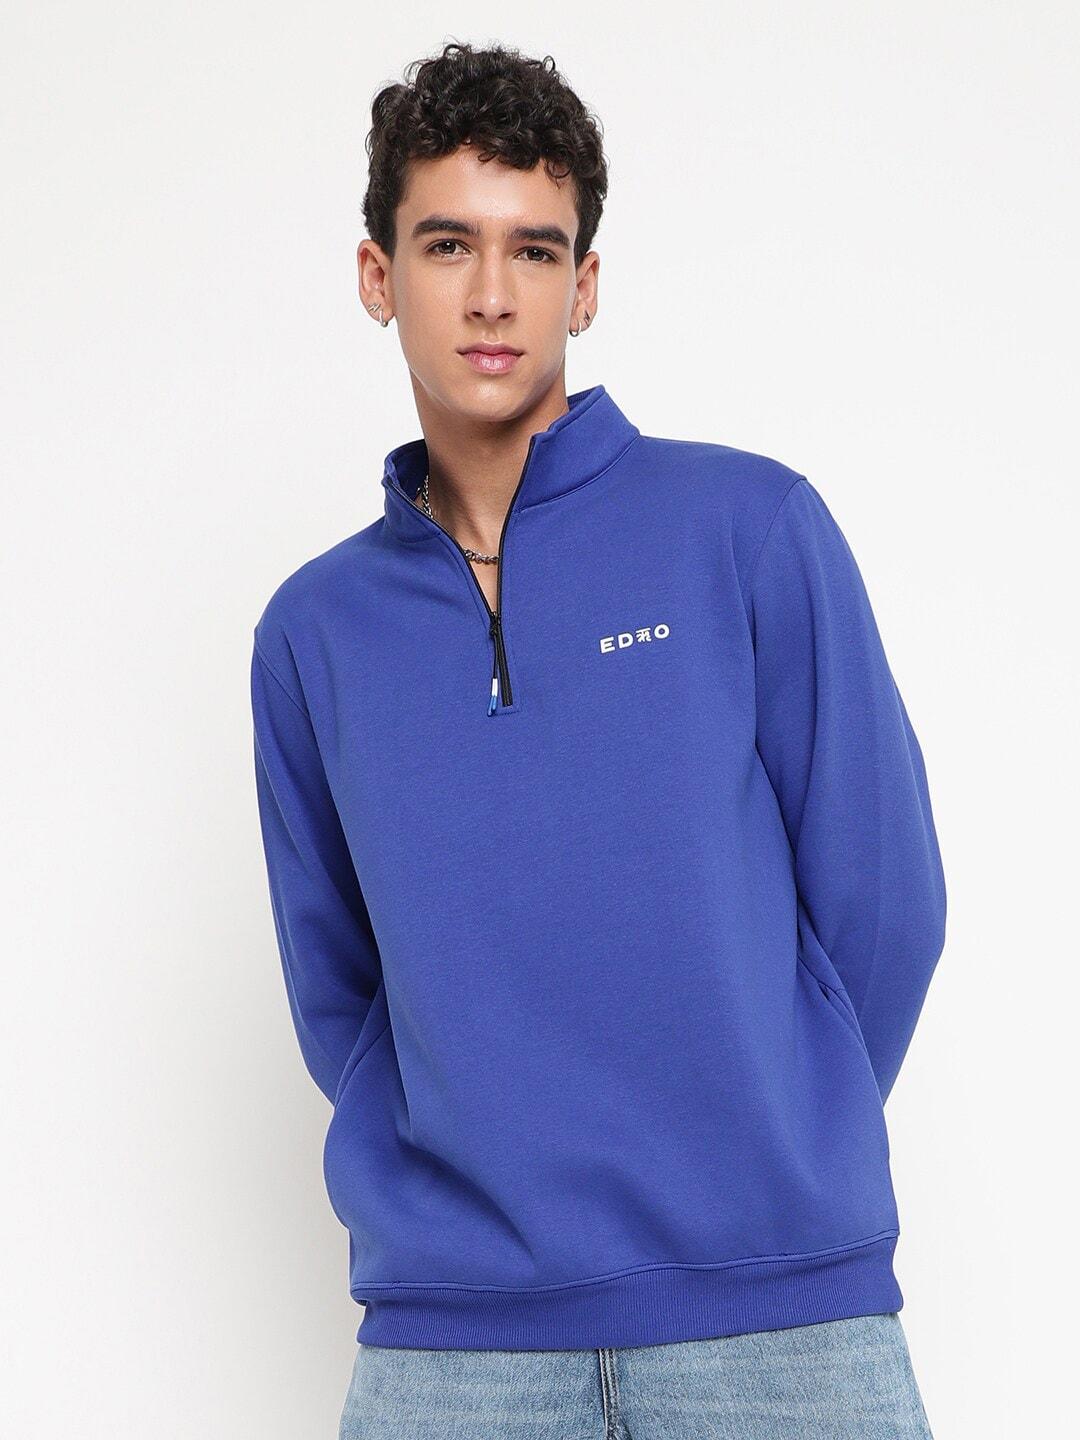 EDRIO Mock Collar Long Sleeve Zip Detail Woollen Pullover Sweatshirt